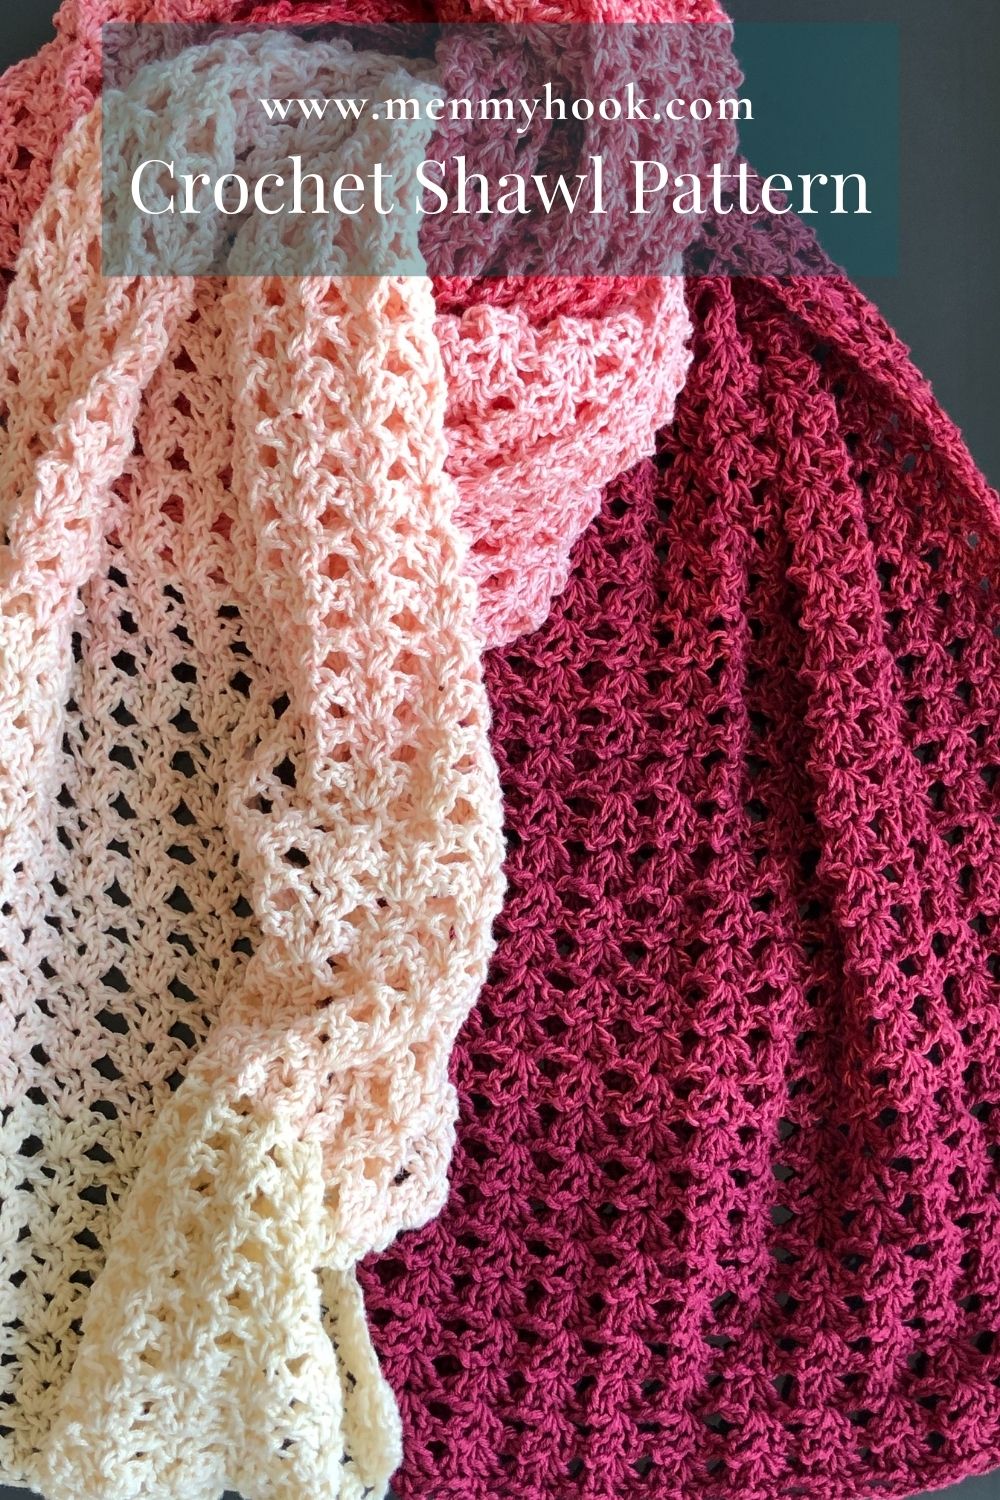 Easy One Skein Crochet Shawl Pattern - Shanae Wrap